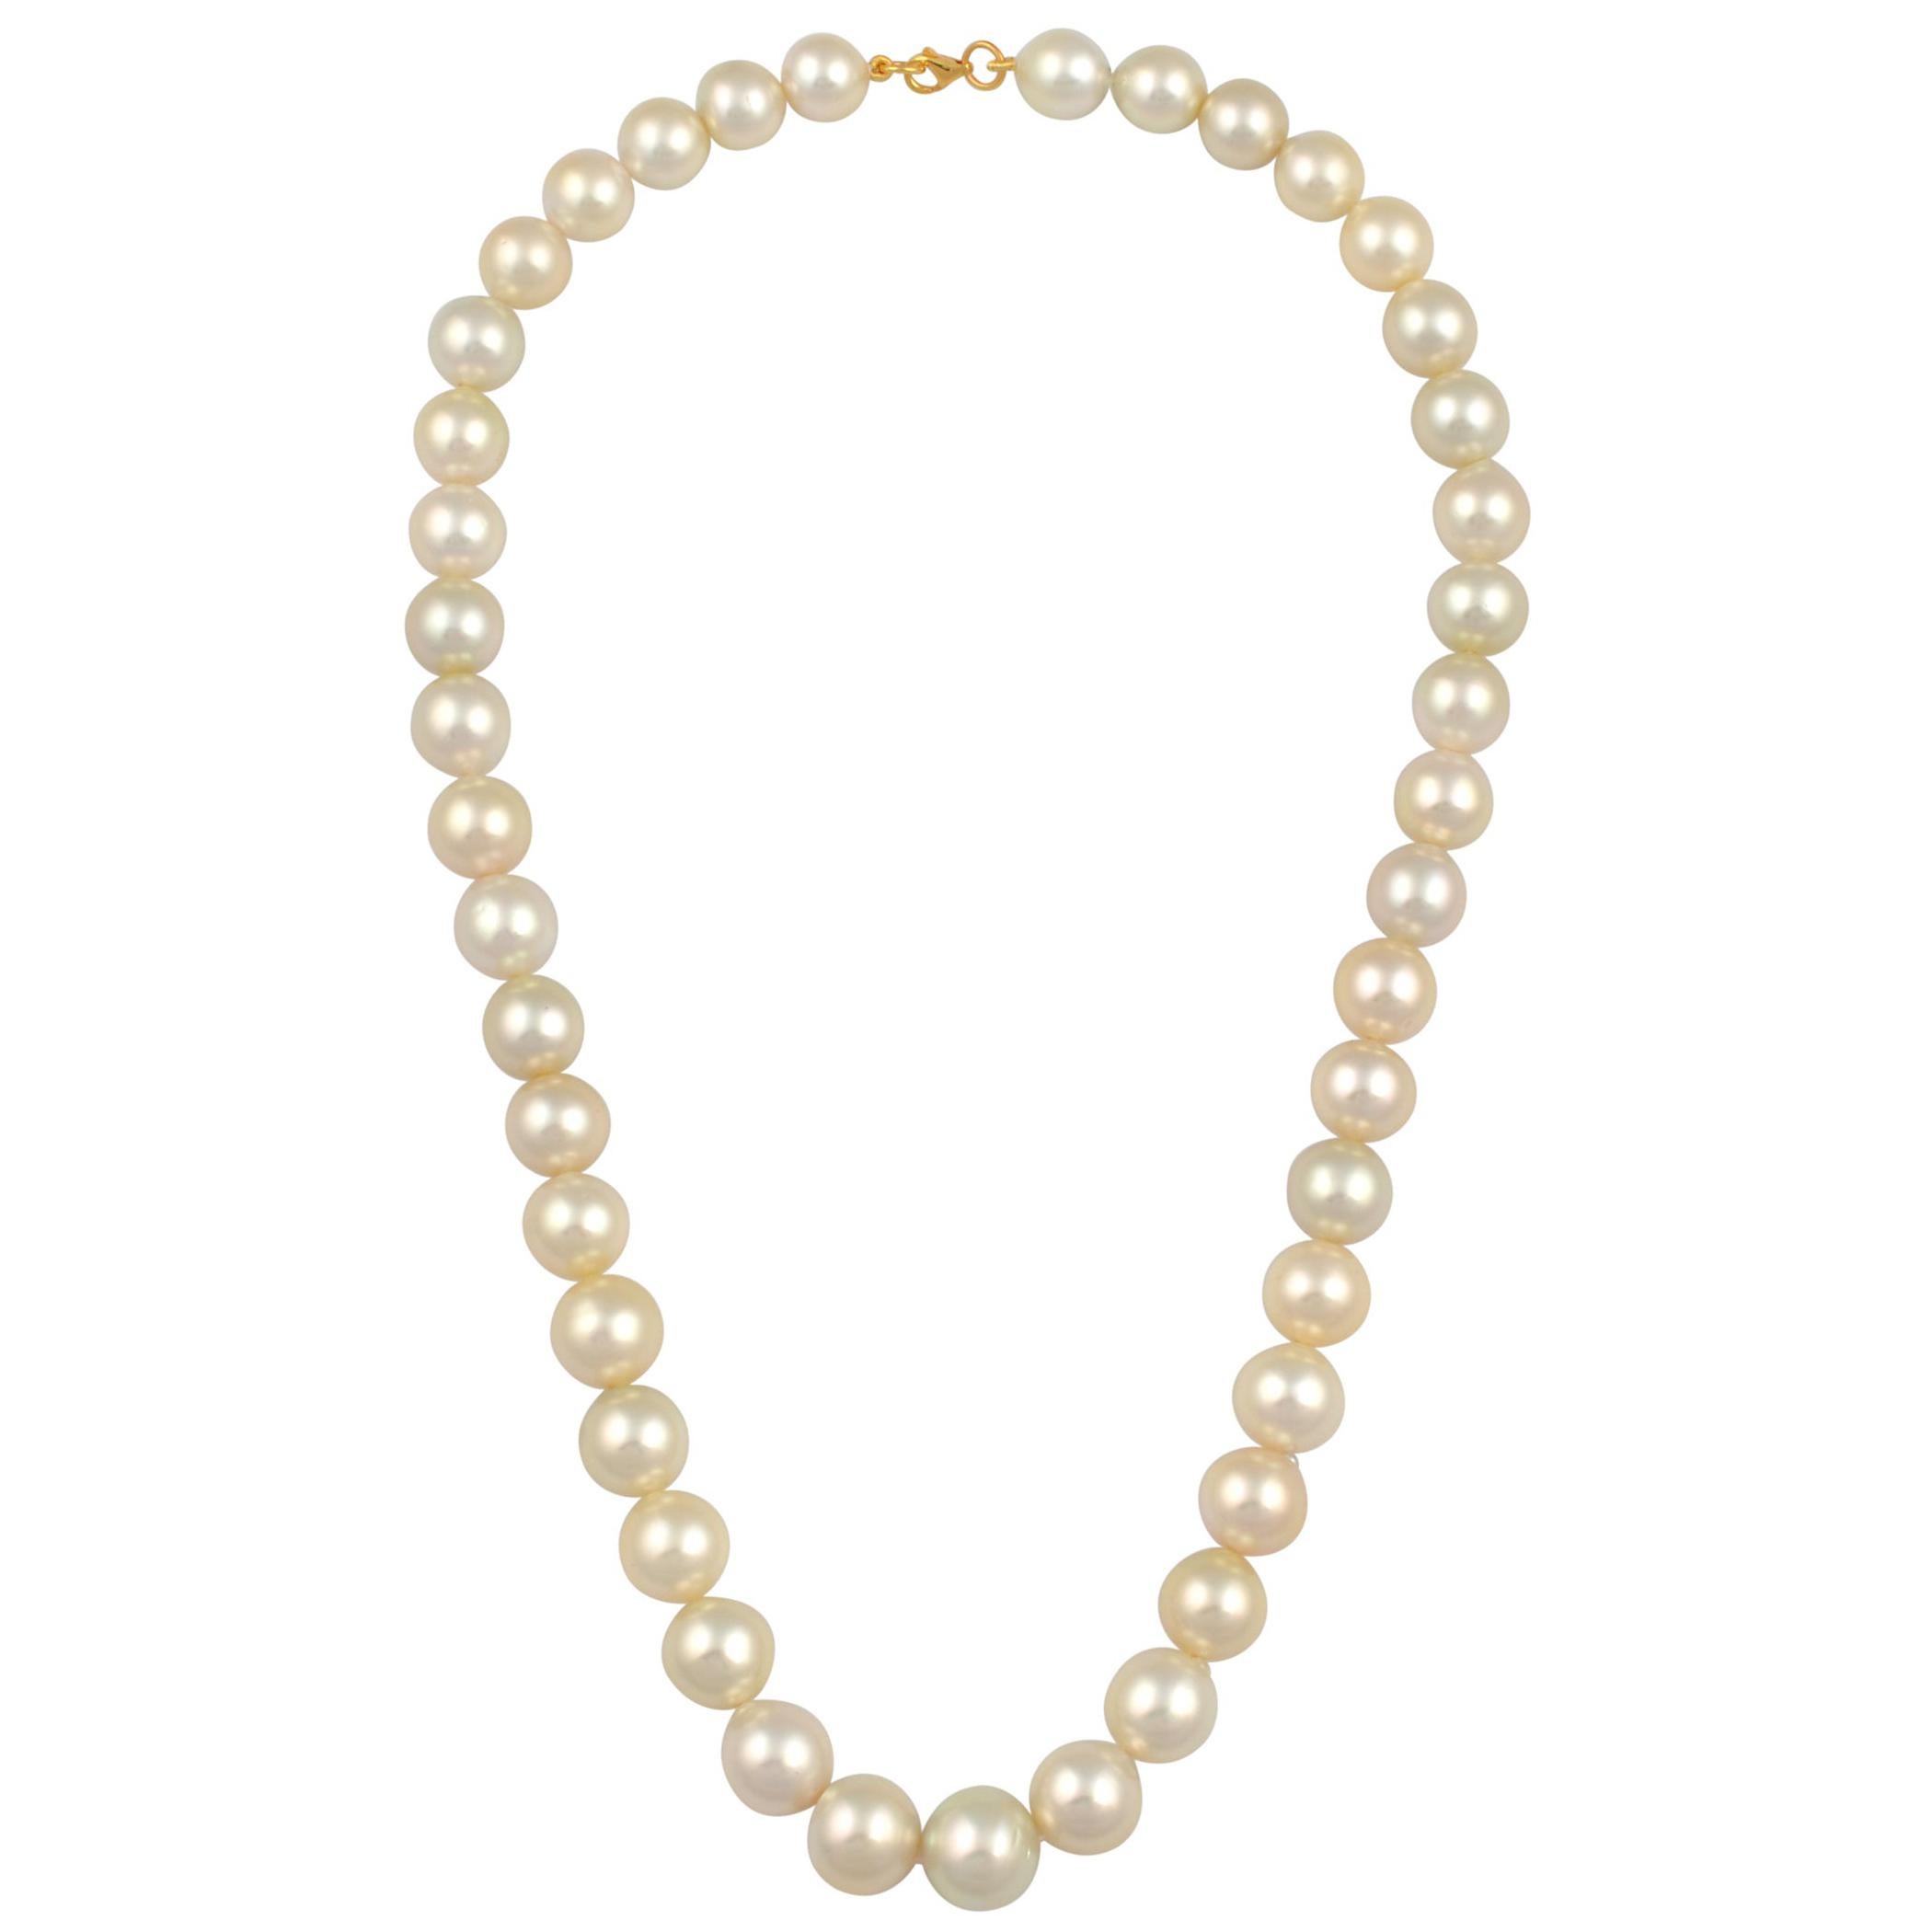 Collier de perles des mers du Sud de couleur crème graduée avec fermoir en or jaune 14 carats